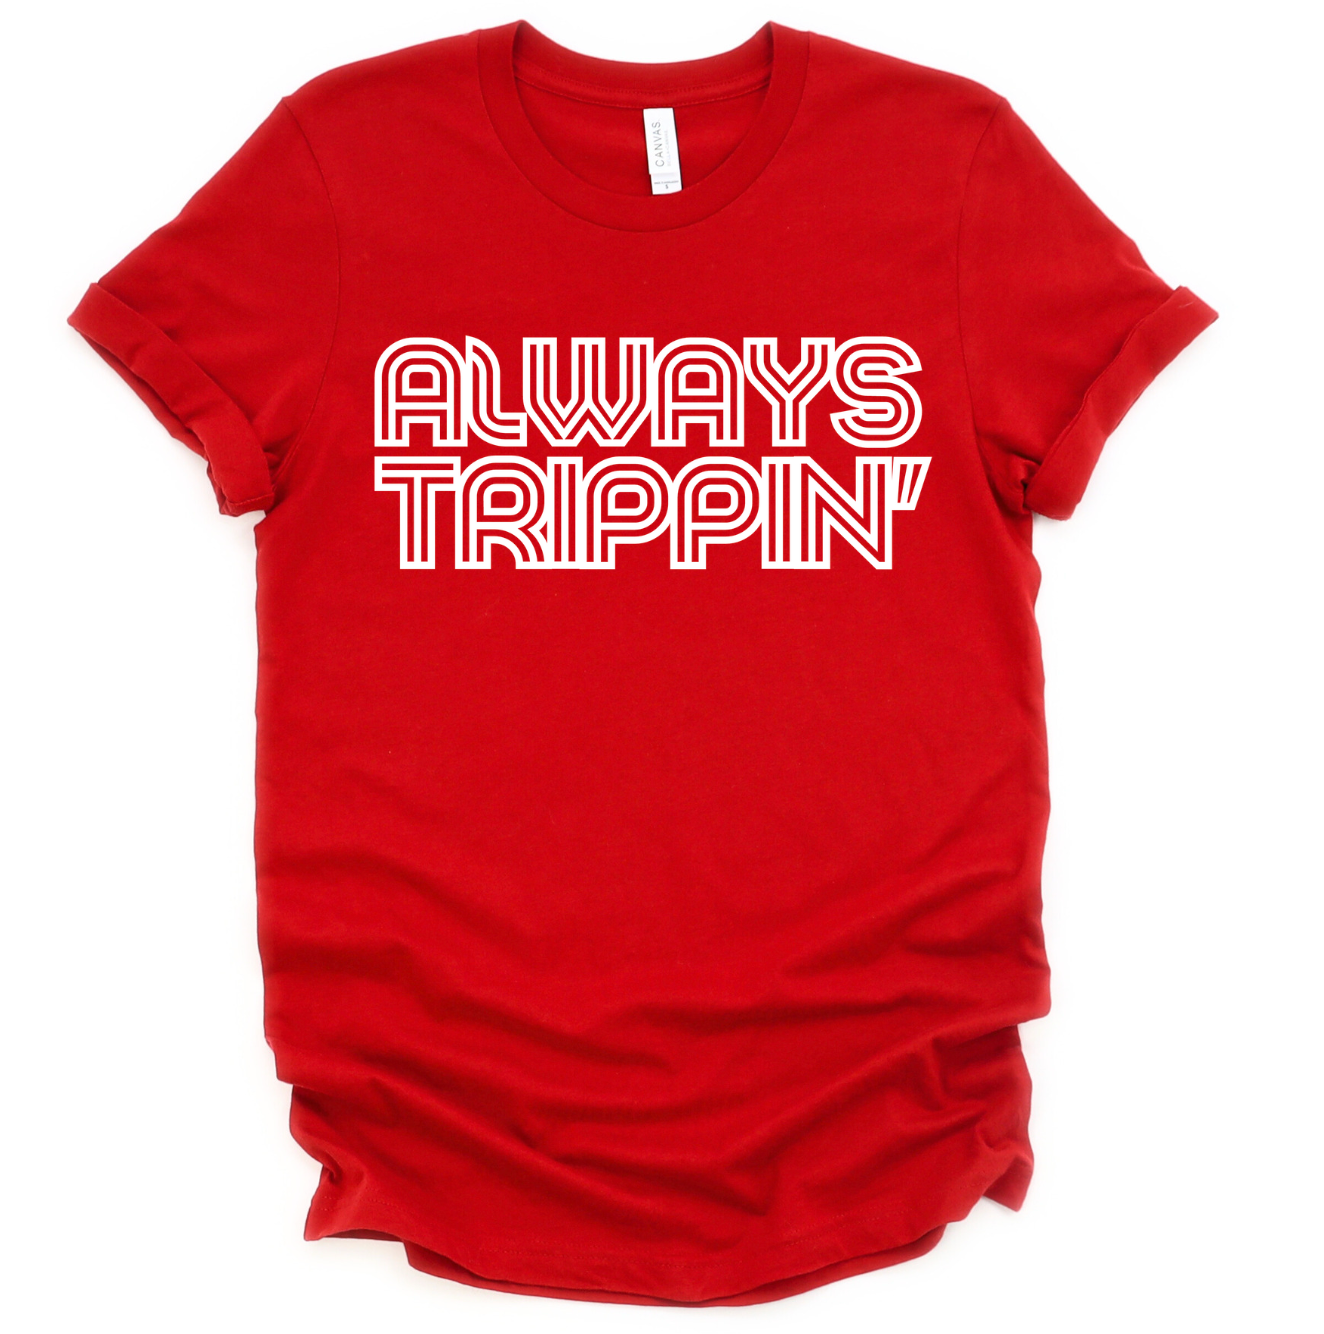 Always Trippin' Unisex Shirt - Red Edition